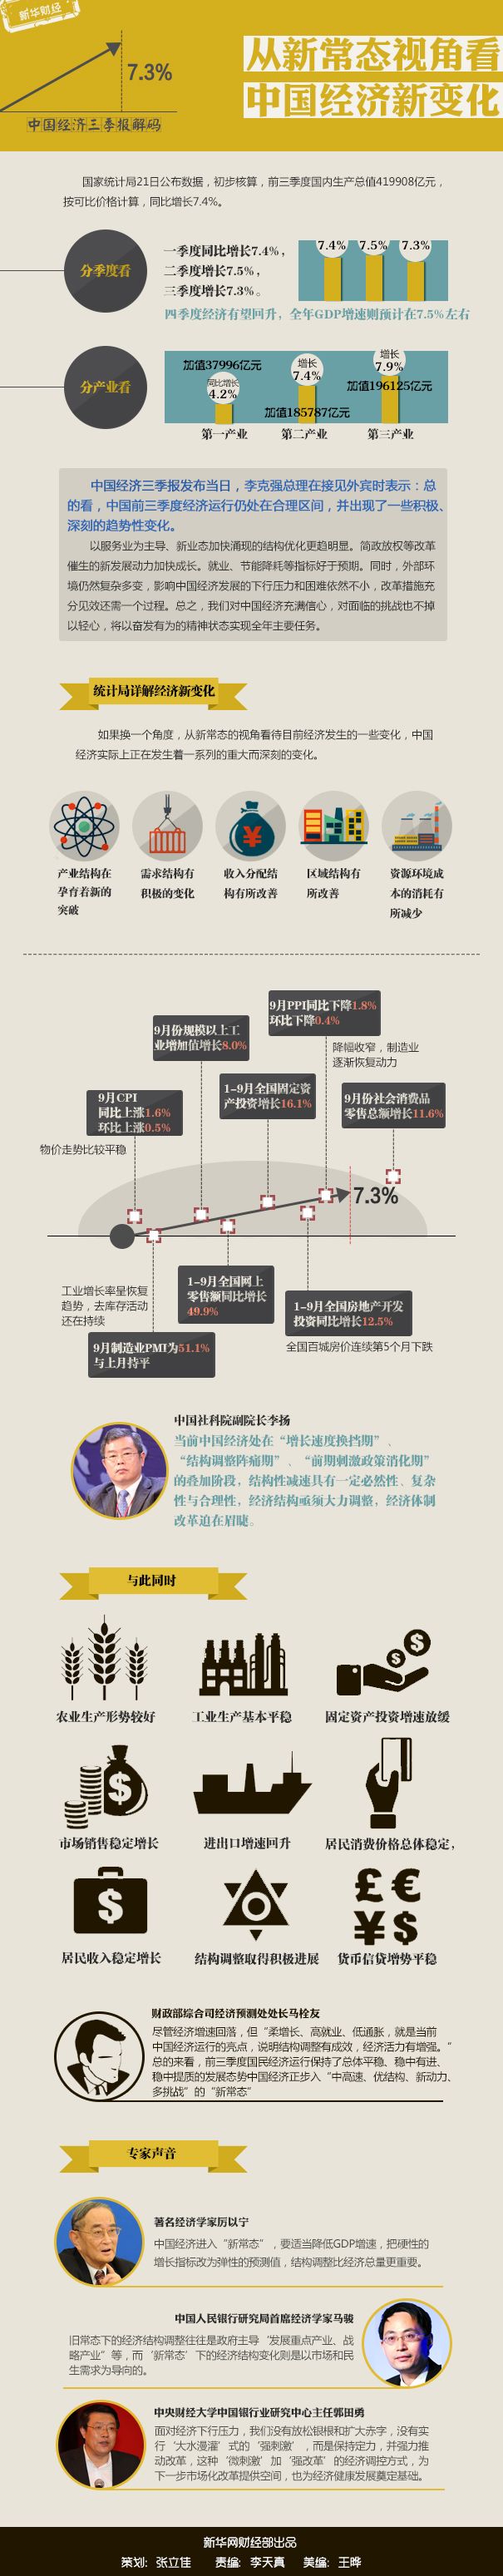 三季报解码——从新常态视角看中国经济新变化